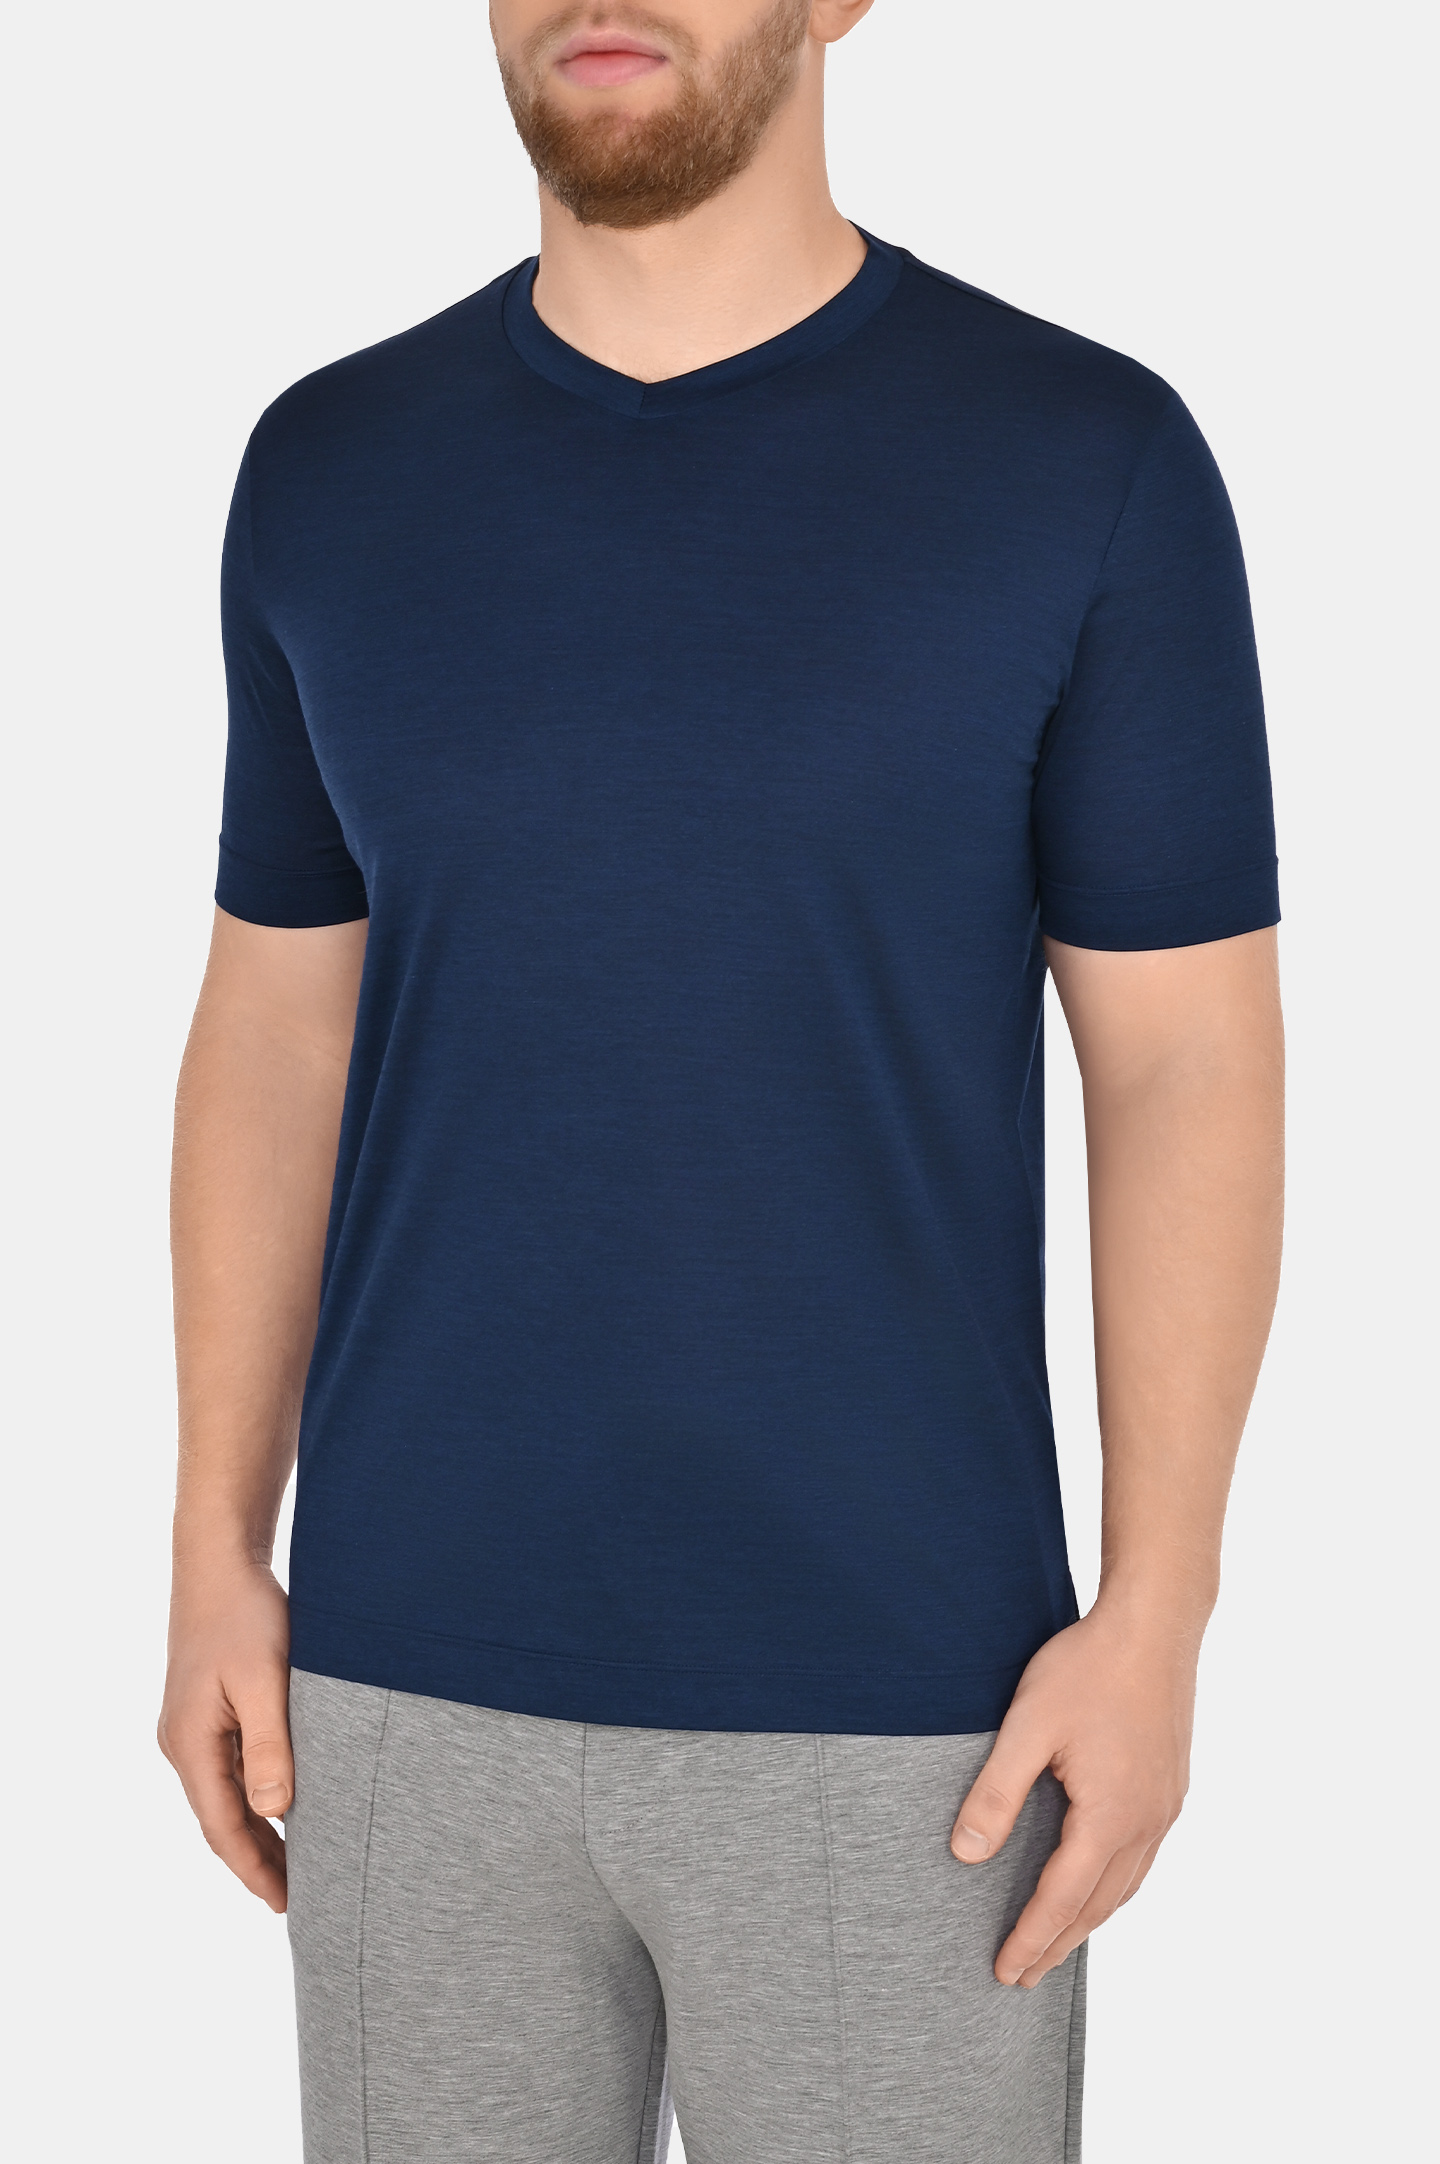 Шелковая футболка CANALI MX01184 T0810/1, цвет: Темно-синий, Мужской